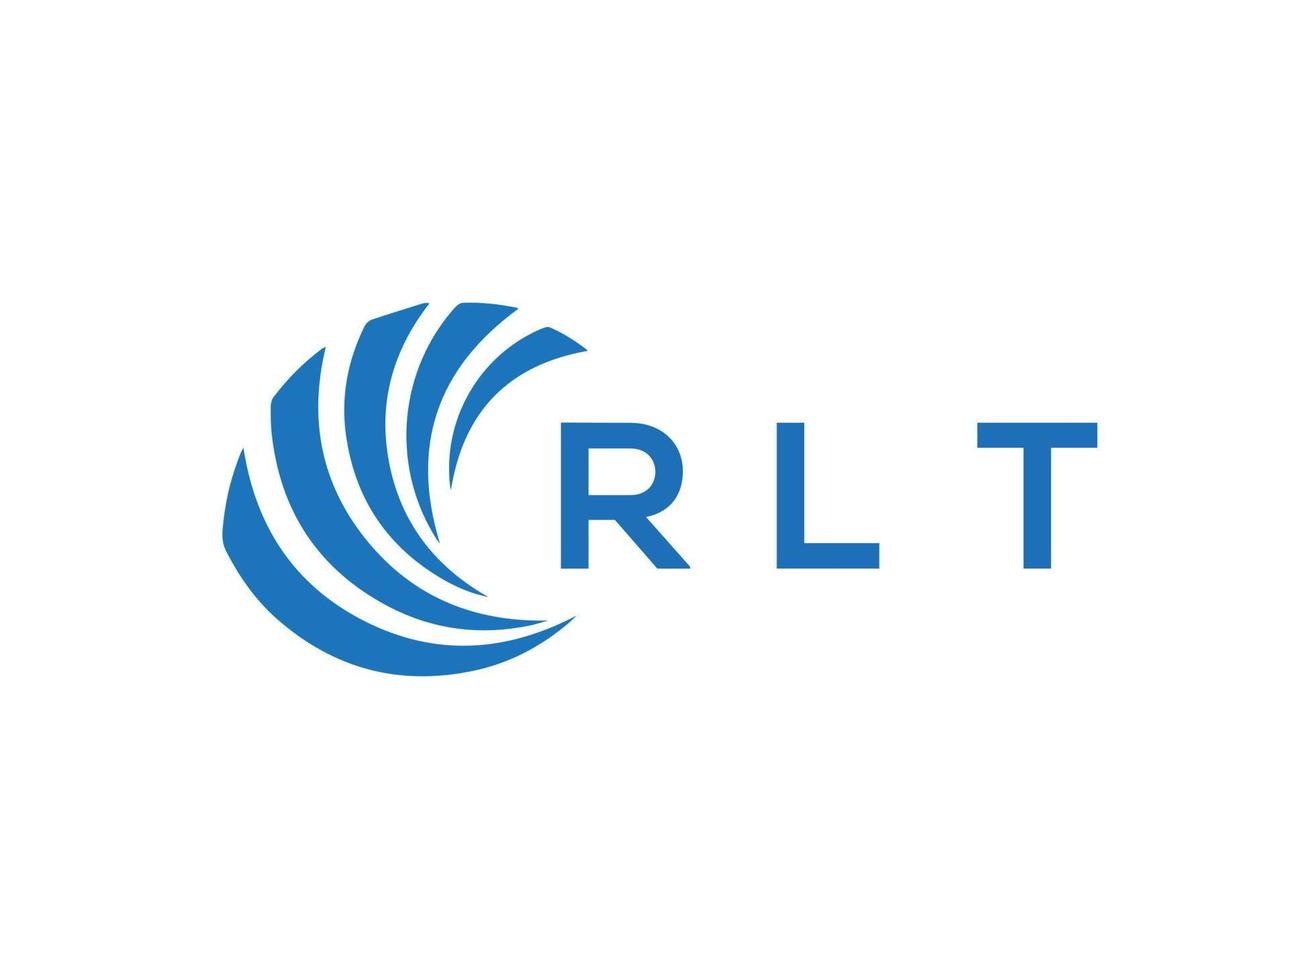 RLT letter logo design on white background. RLT creative circle letter logo concept. RLT letter design. vector